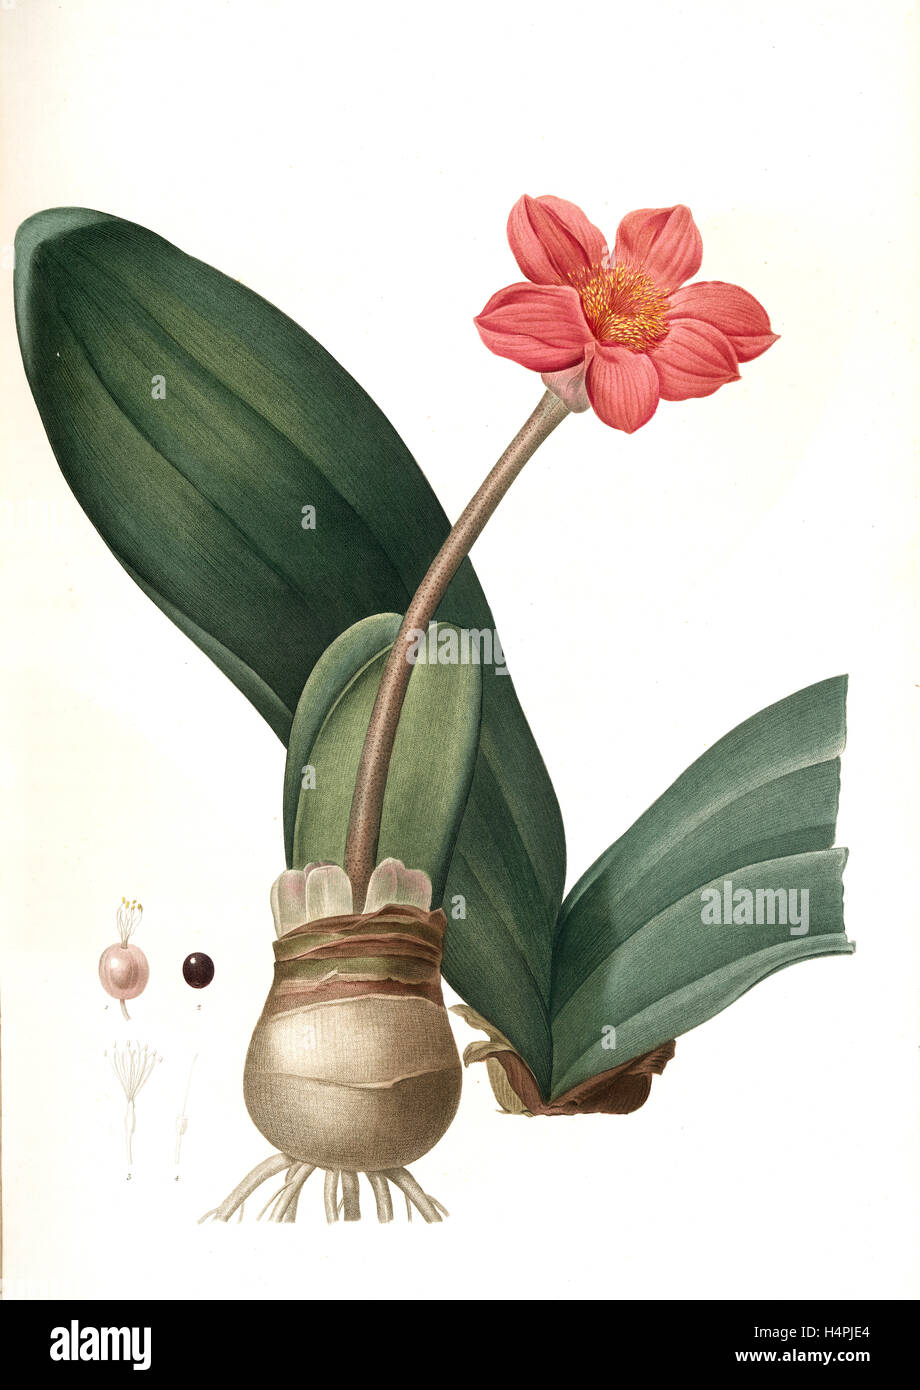 Haemanthus coccineus, Hémanthe écarlate; Blood Lily, Paint Brush; April Fool, Redouté, Pierre Joseph, 1759-1840, les liliacees Stock Photo